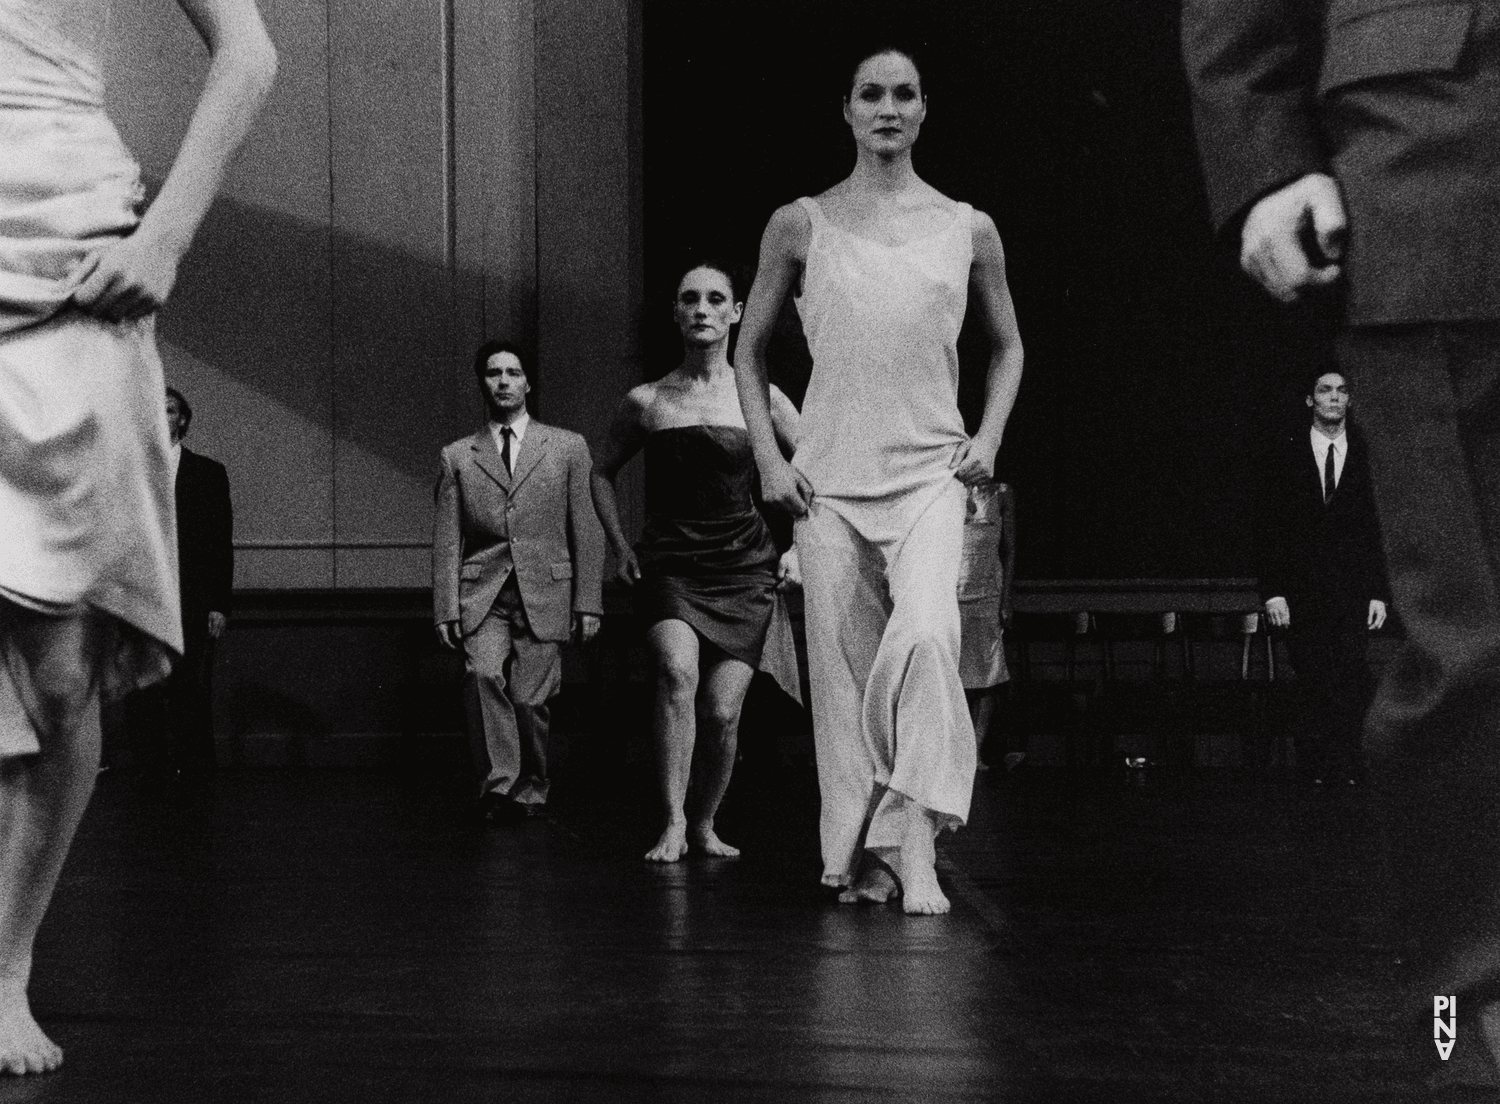 “Kontakthof” by Pina Bausch with Tanztheater Wuppertal at Schauspielhaus Wuppertal (Germany), Feb. 21, 2000